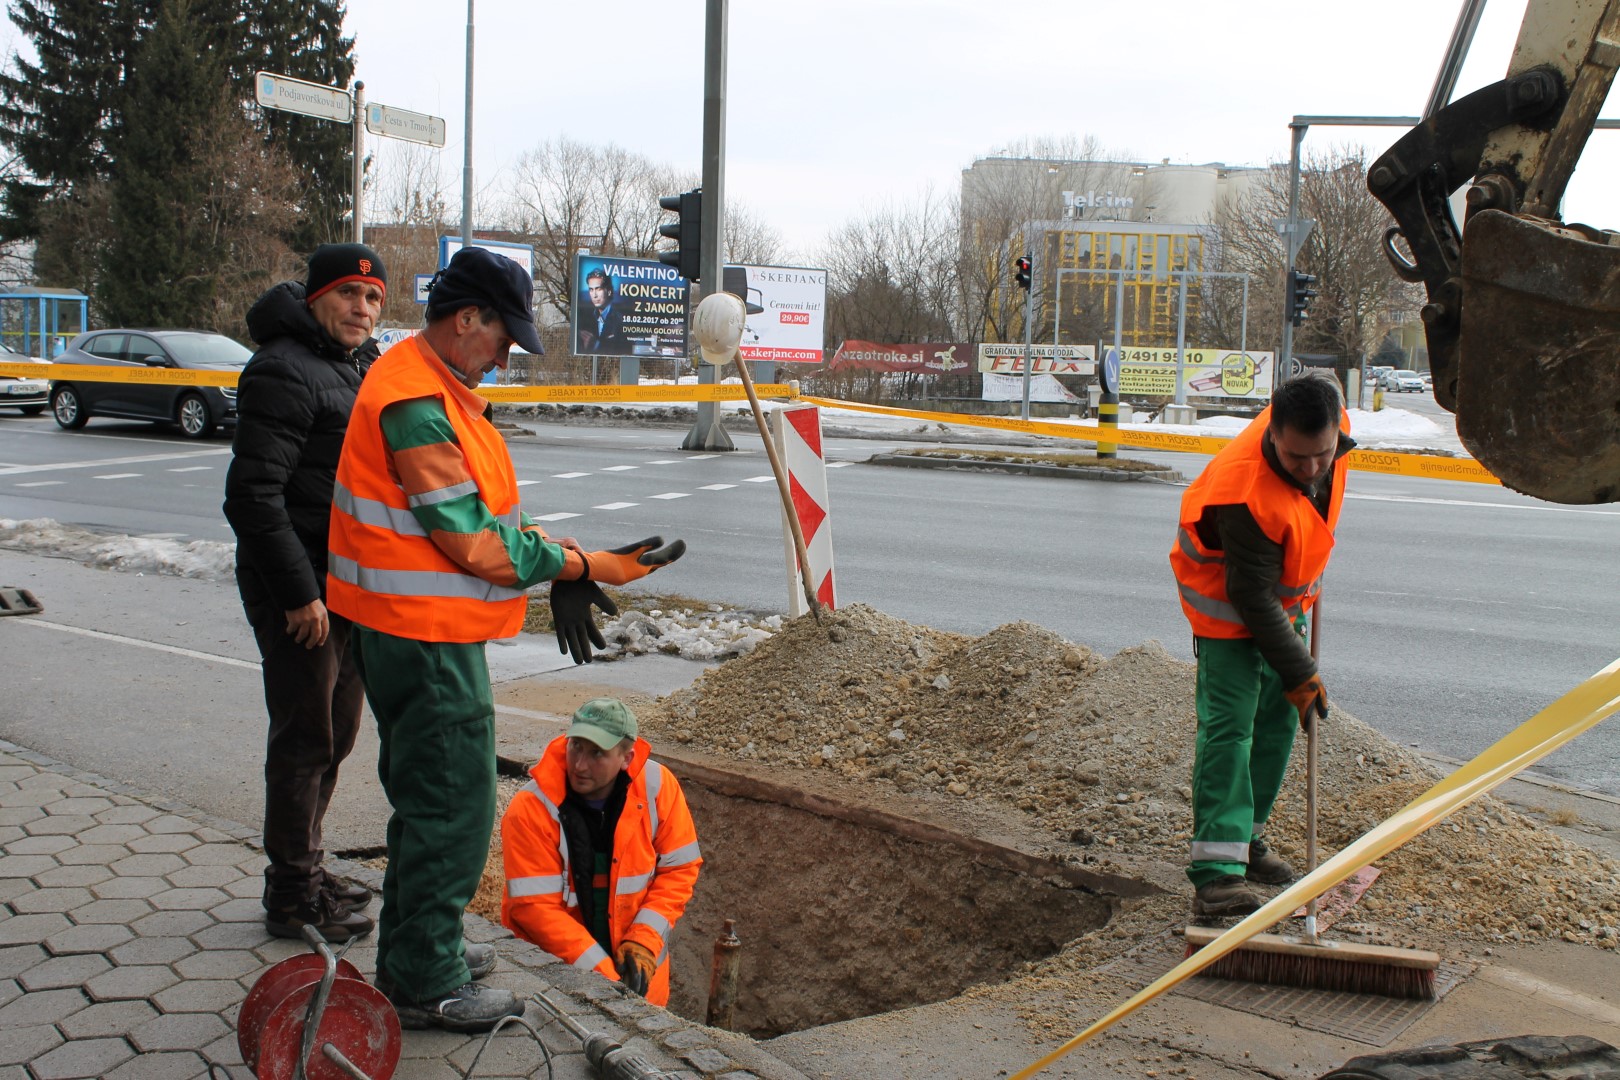 Pojasnilo v zvezi z izbuhom plina ob Mariborski cesti v Celju 1. februarja 2017